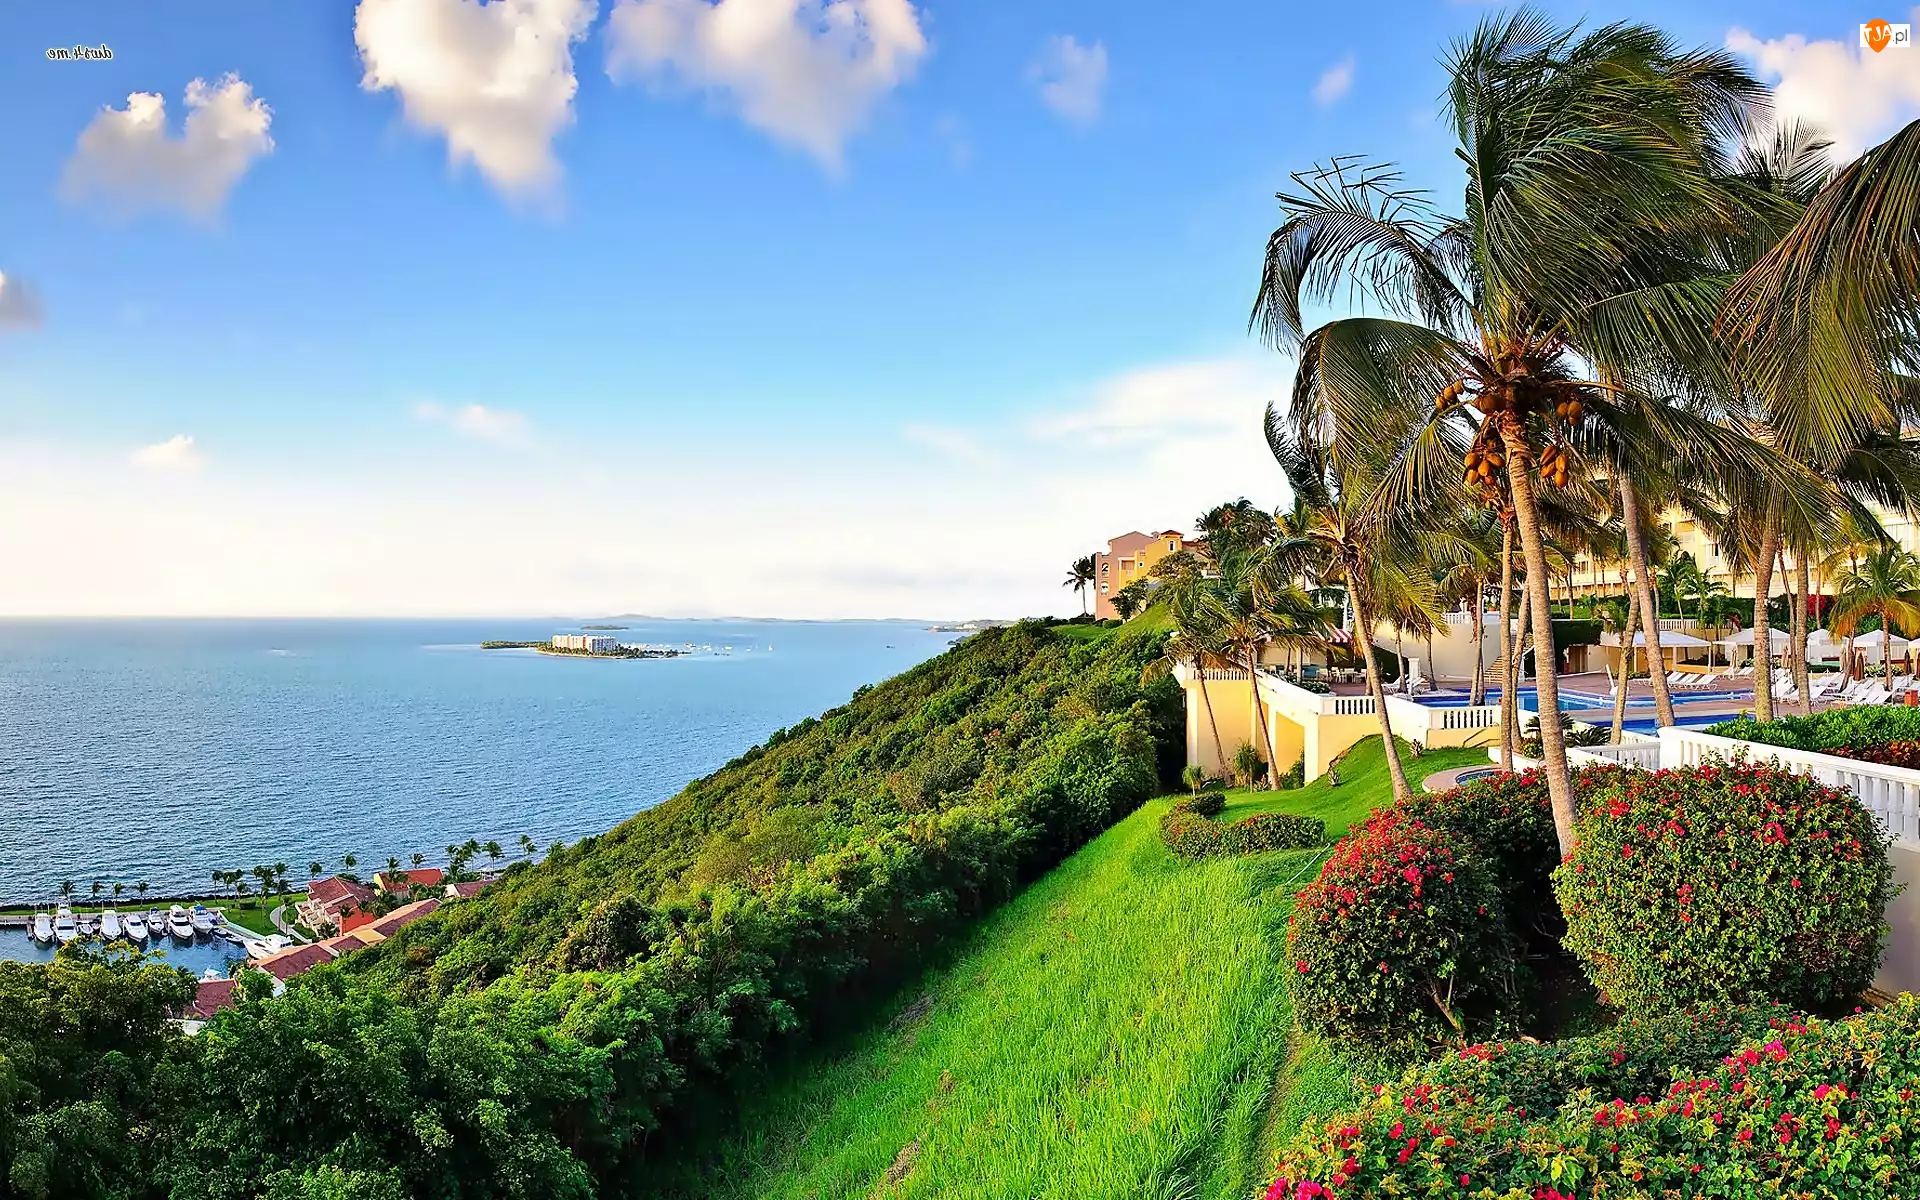 Puerto Rico, Morze, Hotel, Wybrzeże, Marina